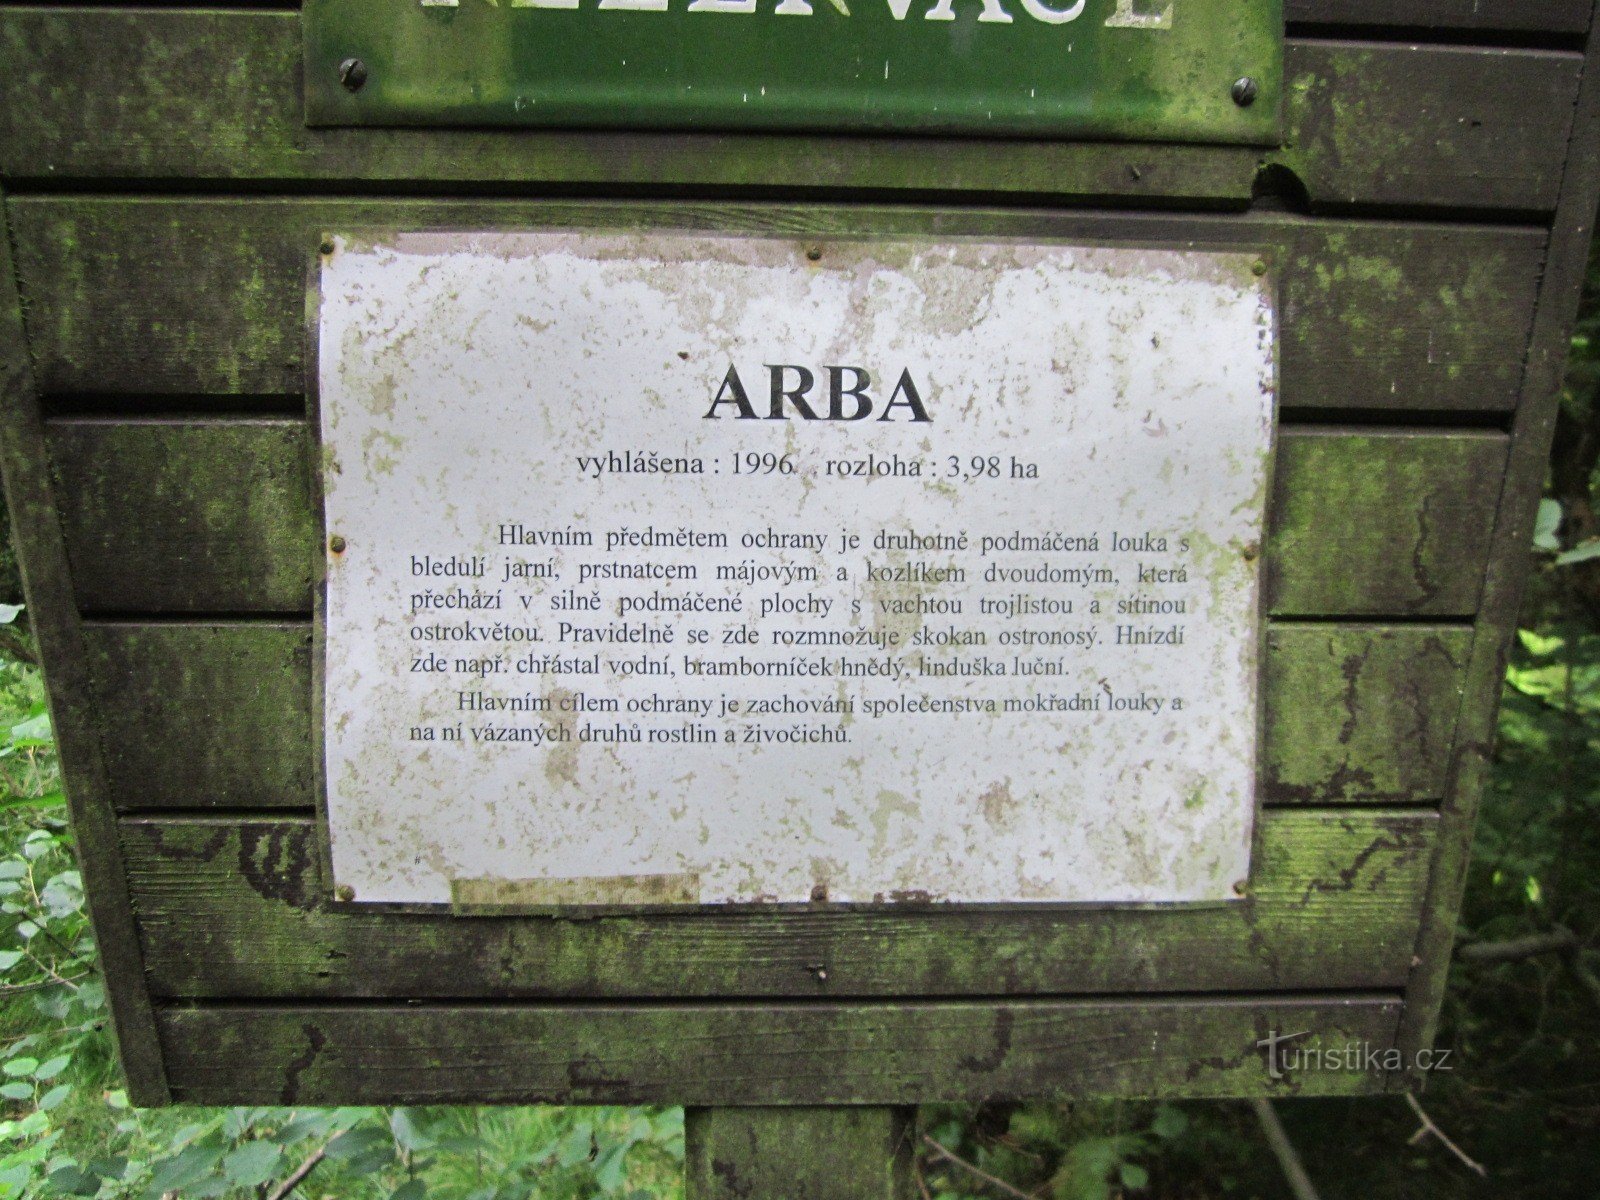 Tabla z informacijami o rezervaciji Arba